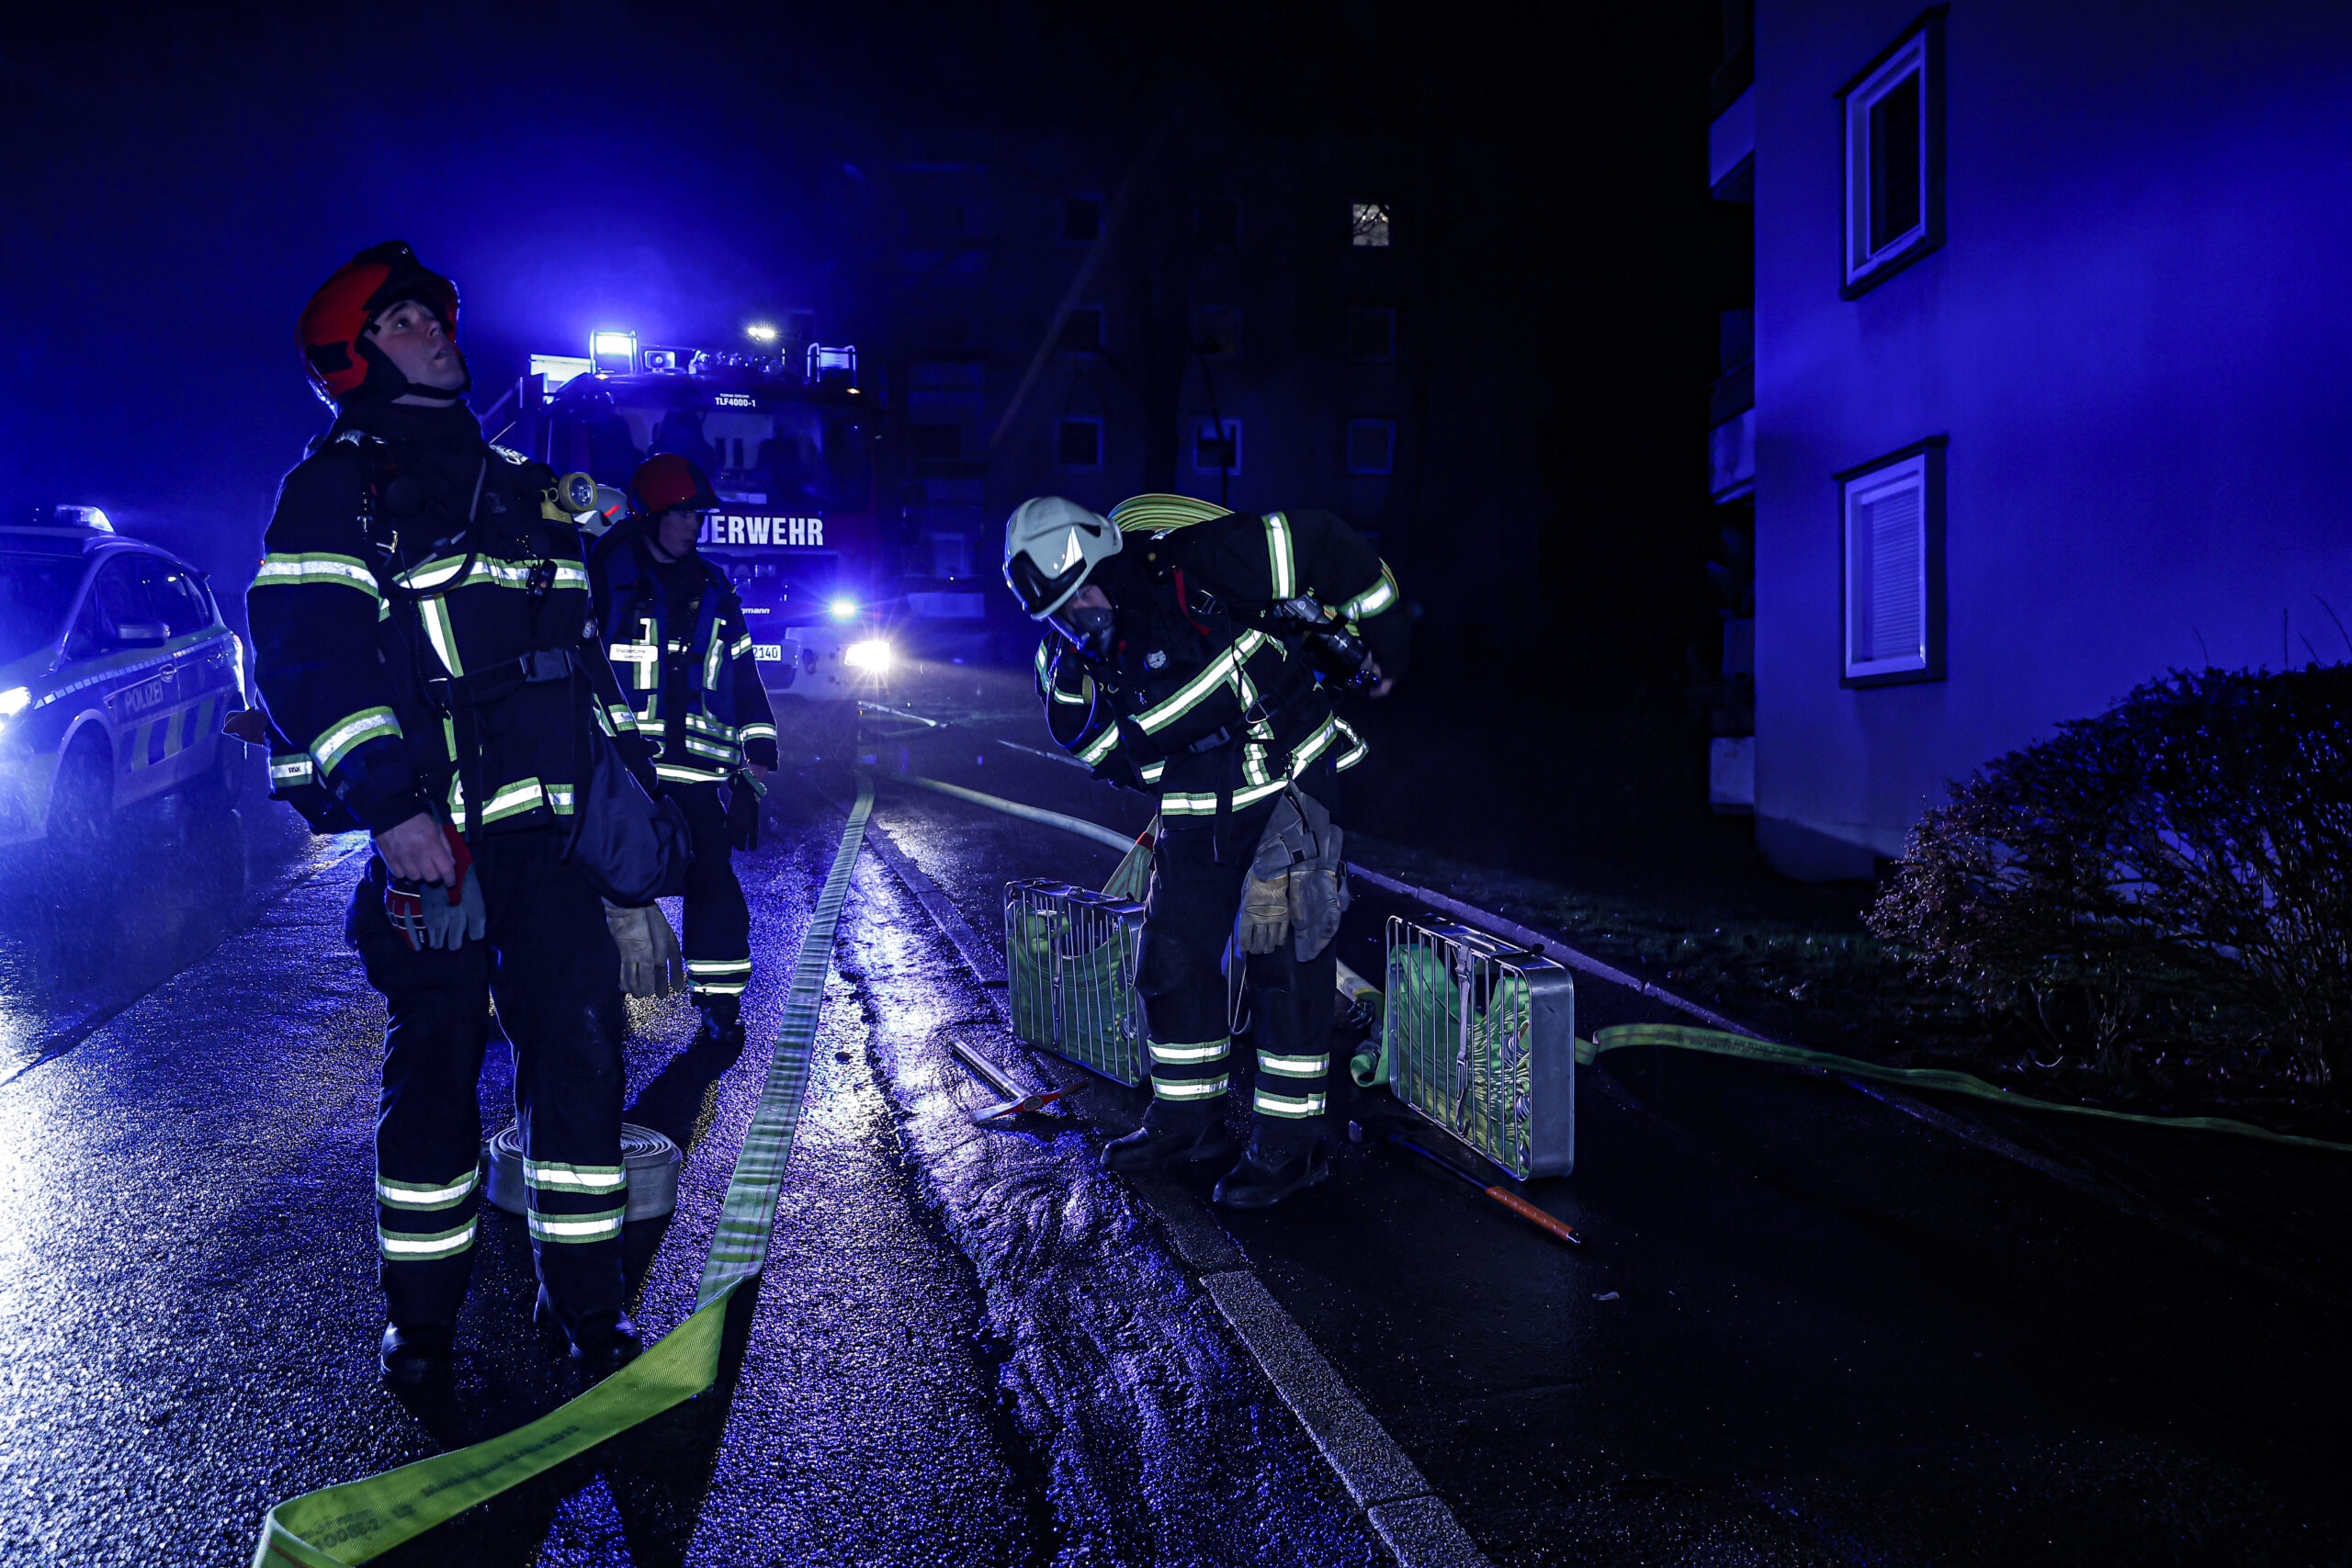 Einsatzkräfte finden Todesopfer nach Wohnungsbrand heute früh in Iserlohn